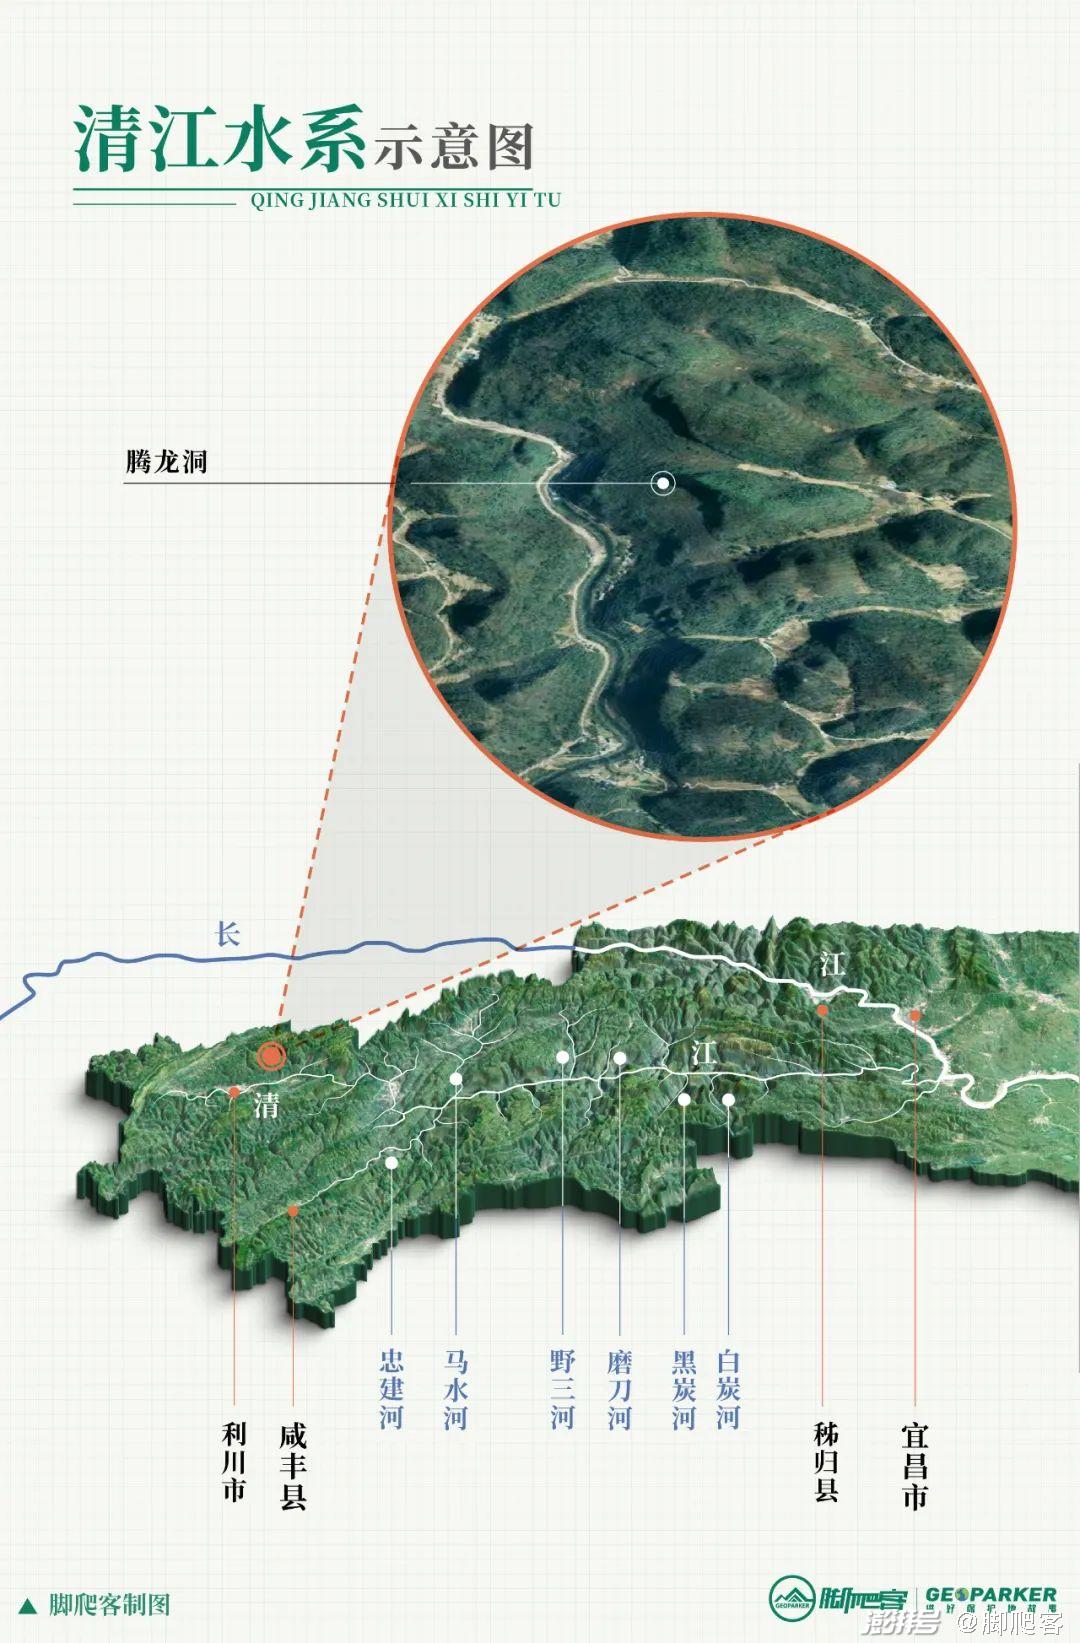 清江水系示意图,腾龙洞部分为清江的地下河08脚爬客/制图